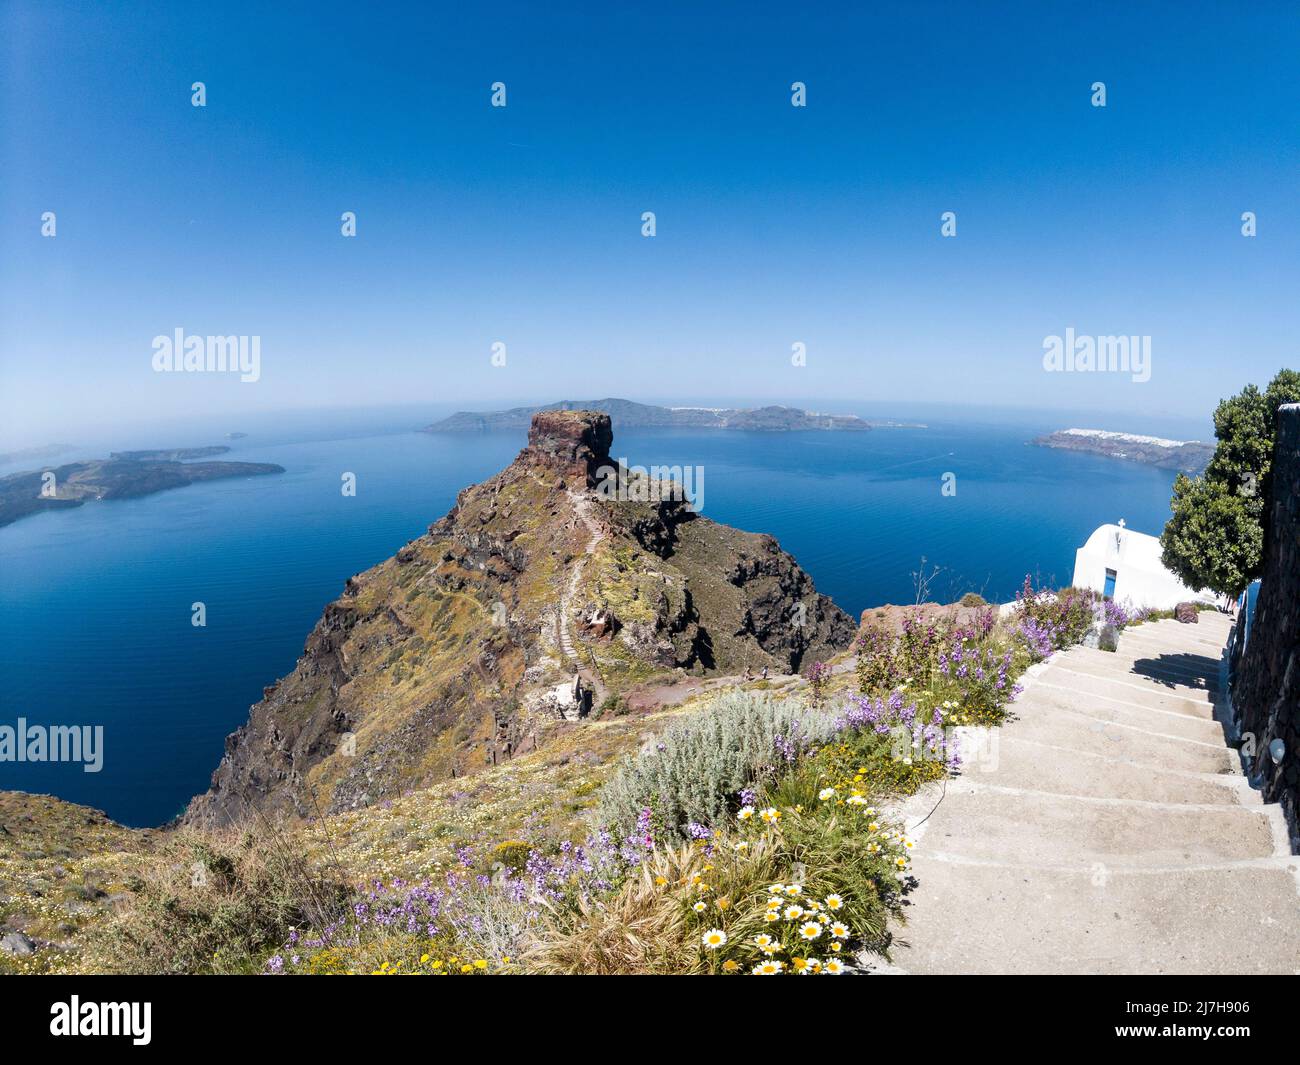 Hermosa vista de la colina de Skaros, en la isla de Santorini, Grecia, y vista al mar de la parte volcánica de Santorini y la legendaria Caldera. Foto de stock